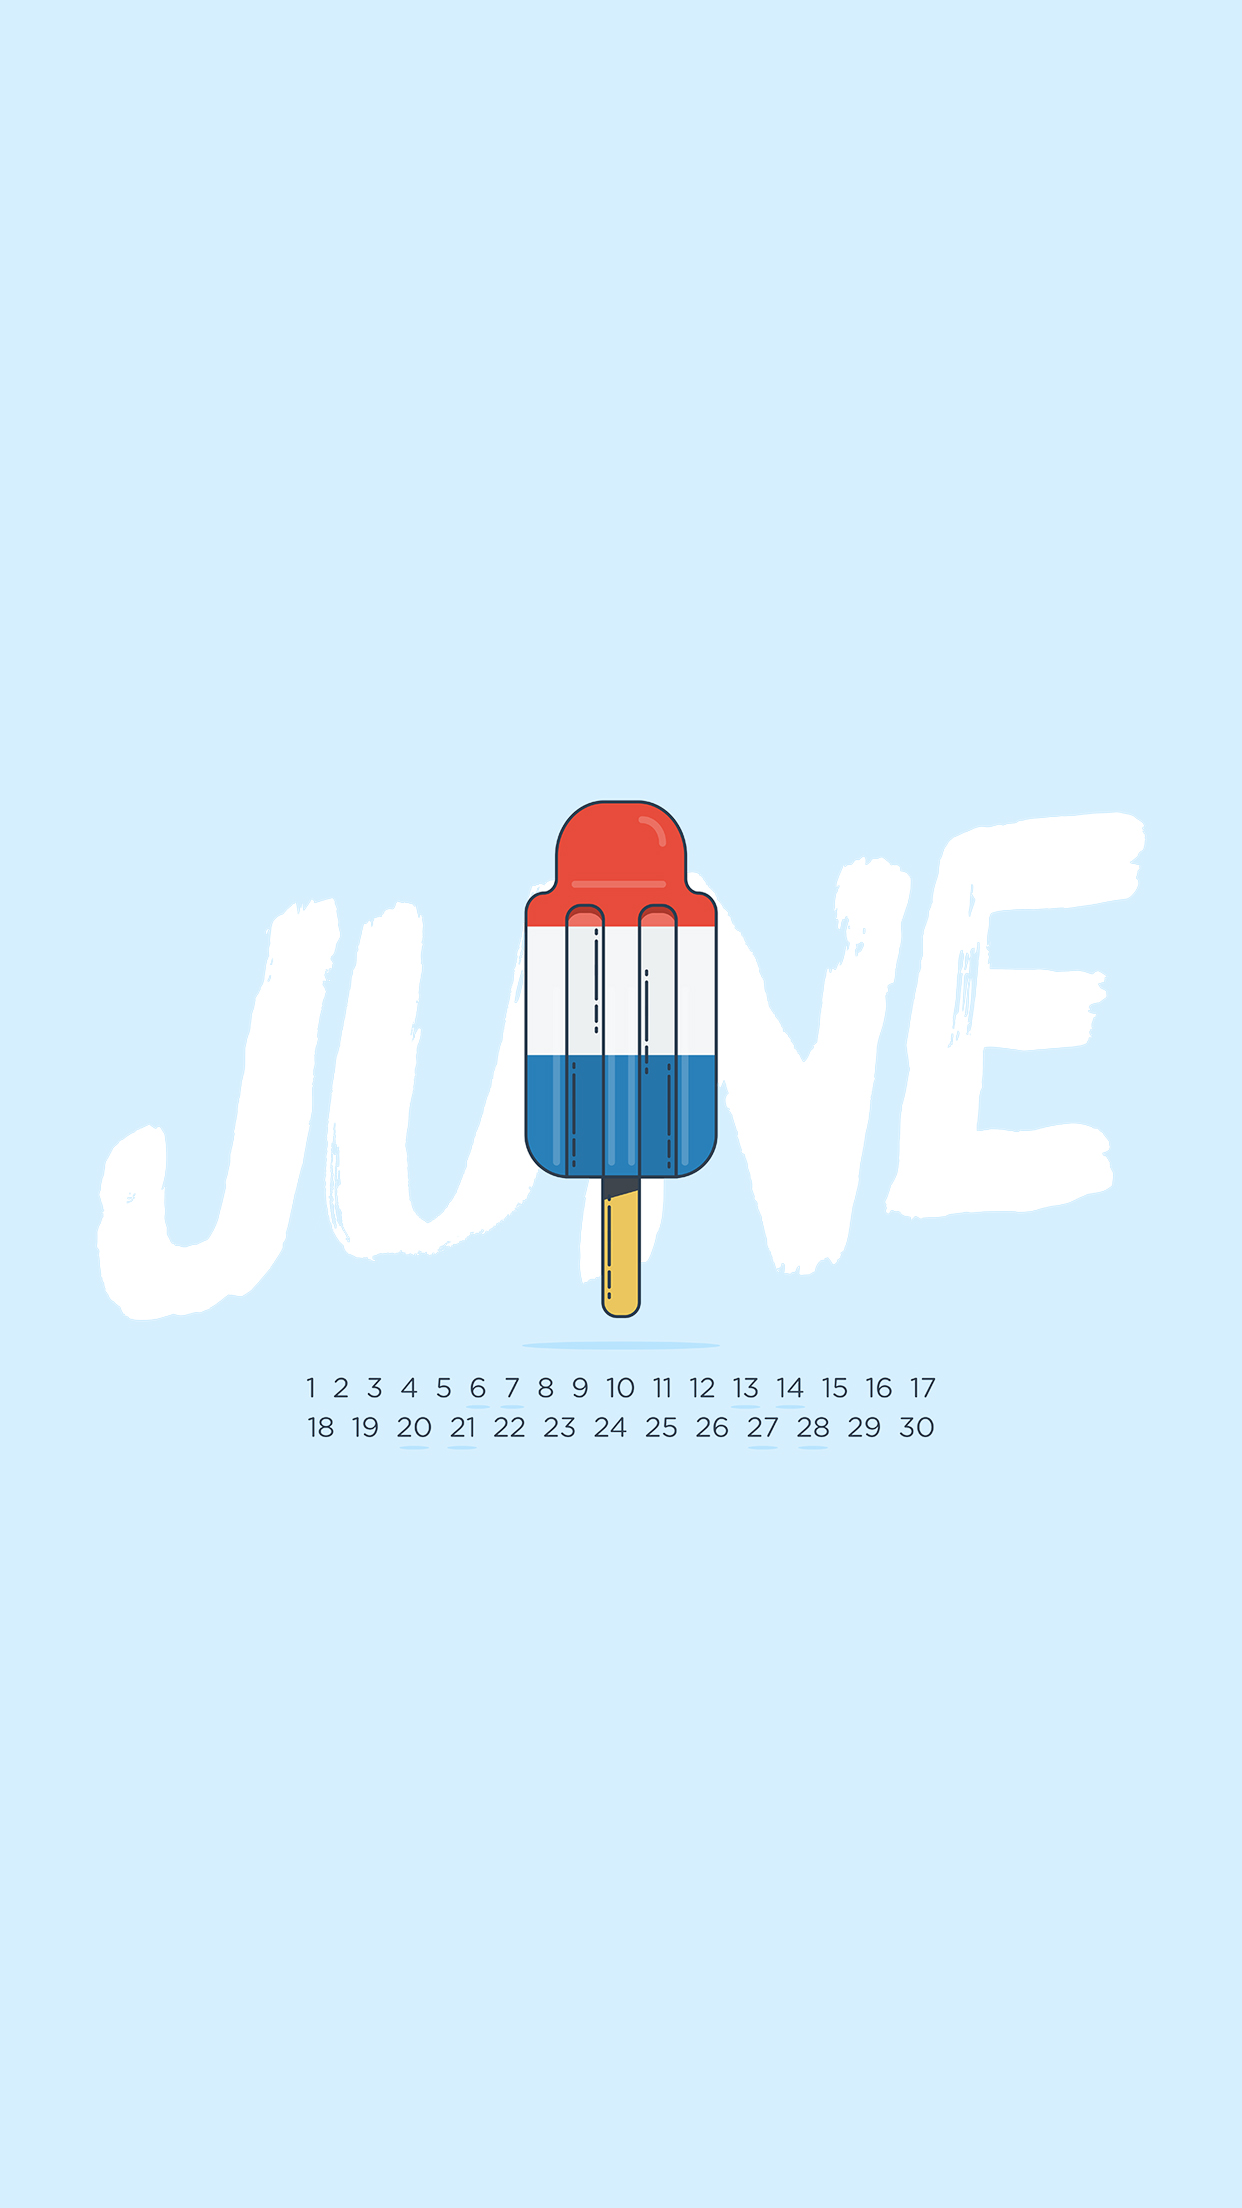 June 2017 Pool Float Calendar Wallpaper  Sarah Hearts